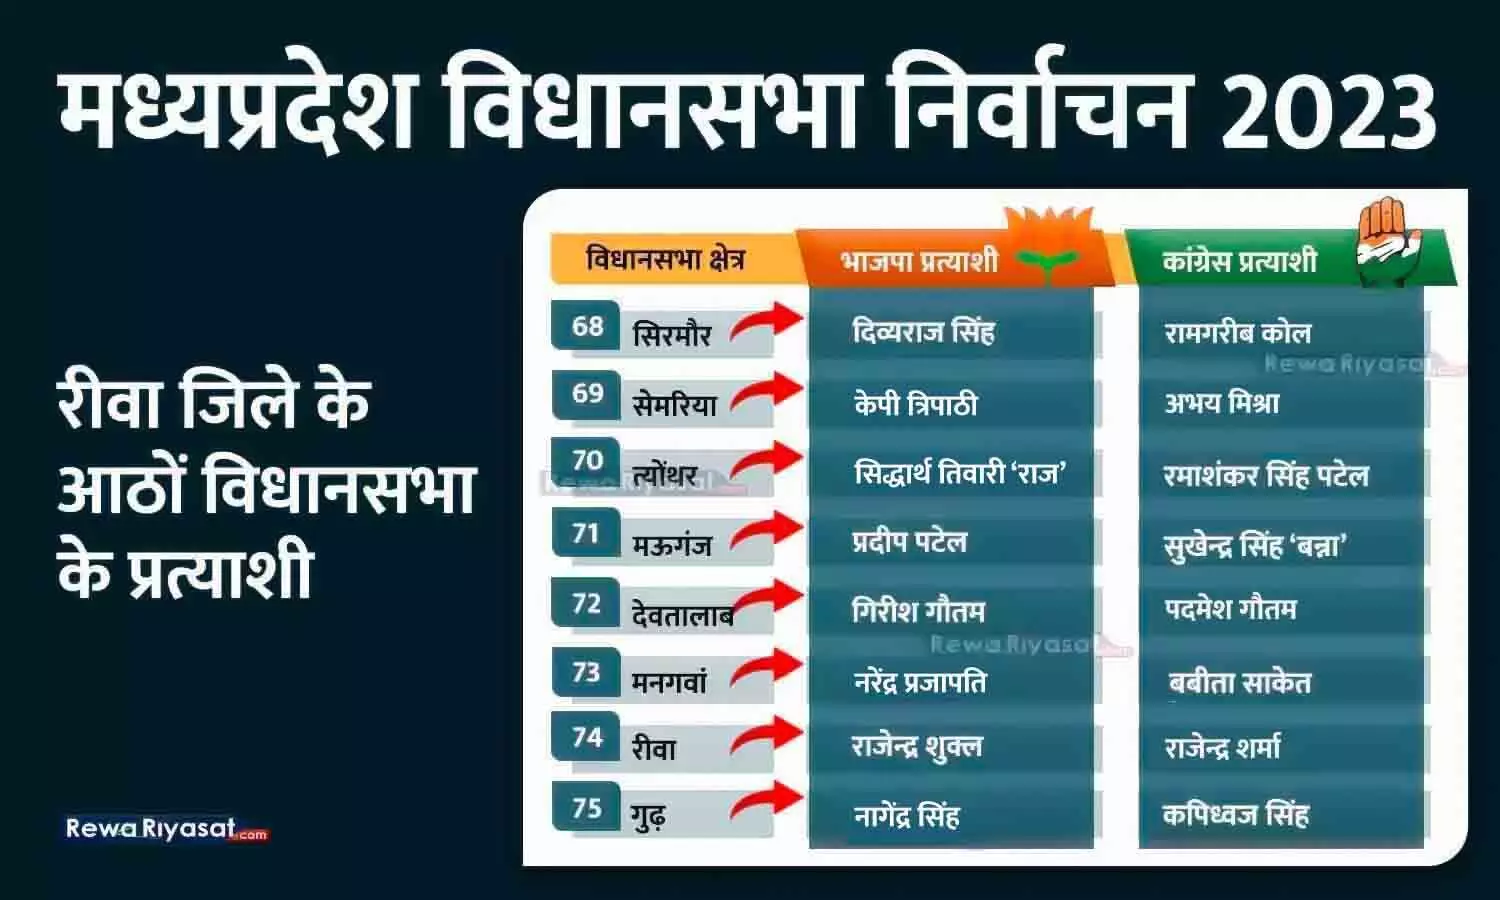 विधानसभा चुनाव 2023: रीवा जिले की 8 सीटों पर भाजपा-कांग्रेस प्रत्याशी, कहां से किसे टिकट मिली; 2018 में क्या स्थिति थी?